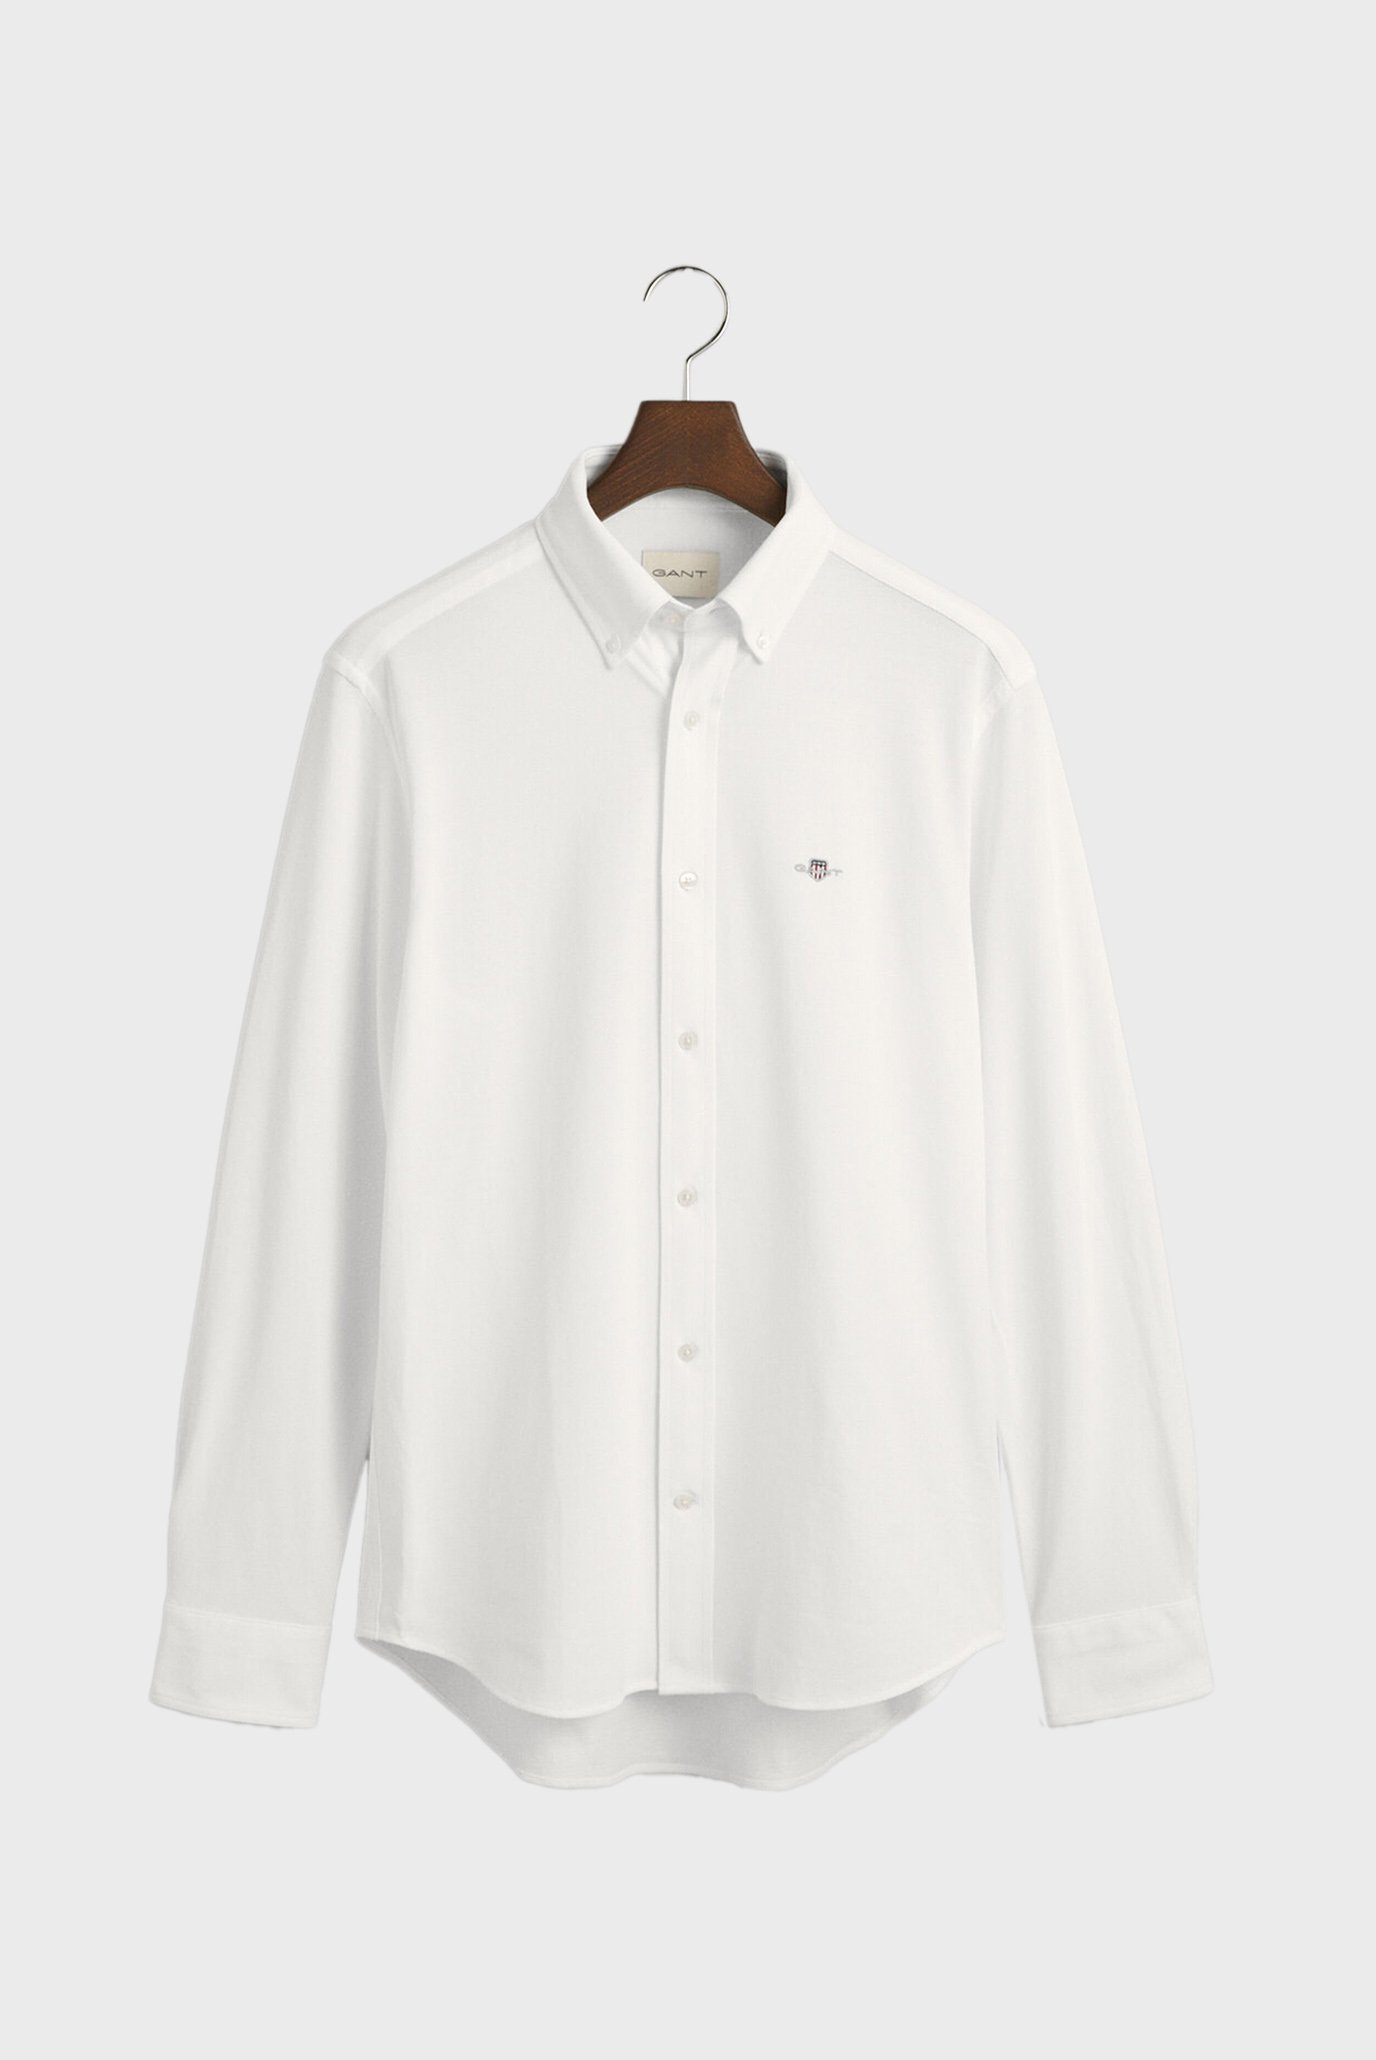 Мужская белая рубашка REG JERSEY PIQUE 1